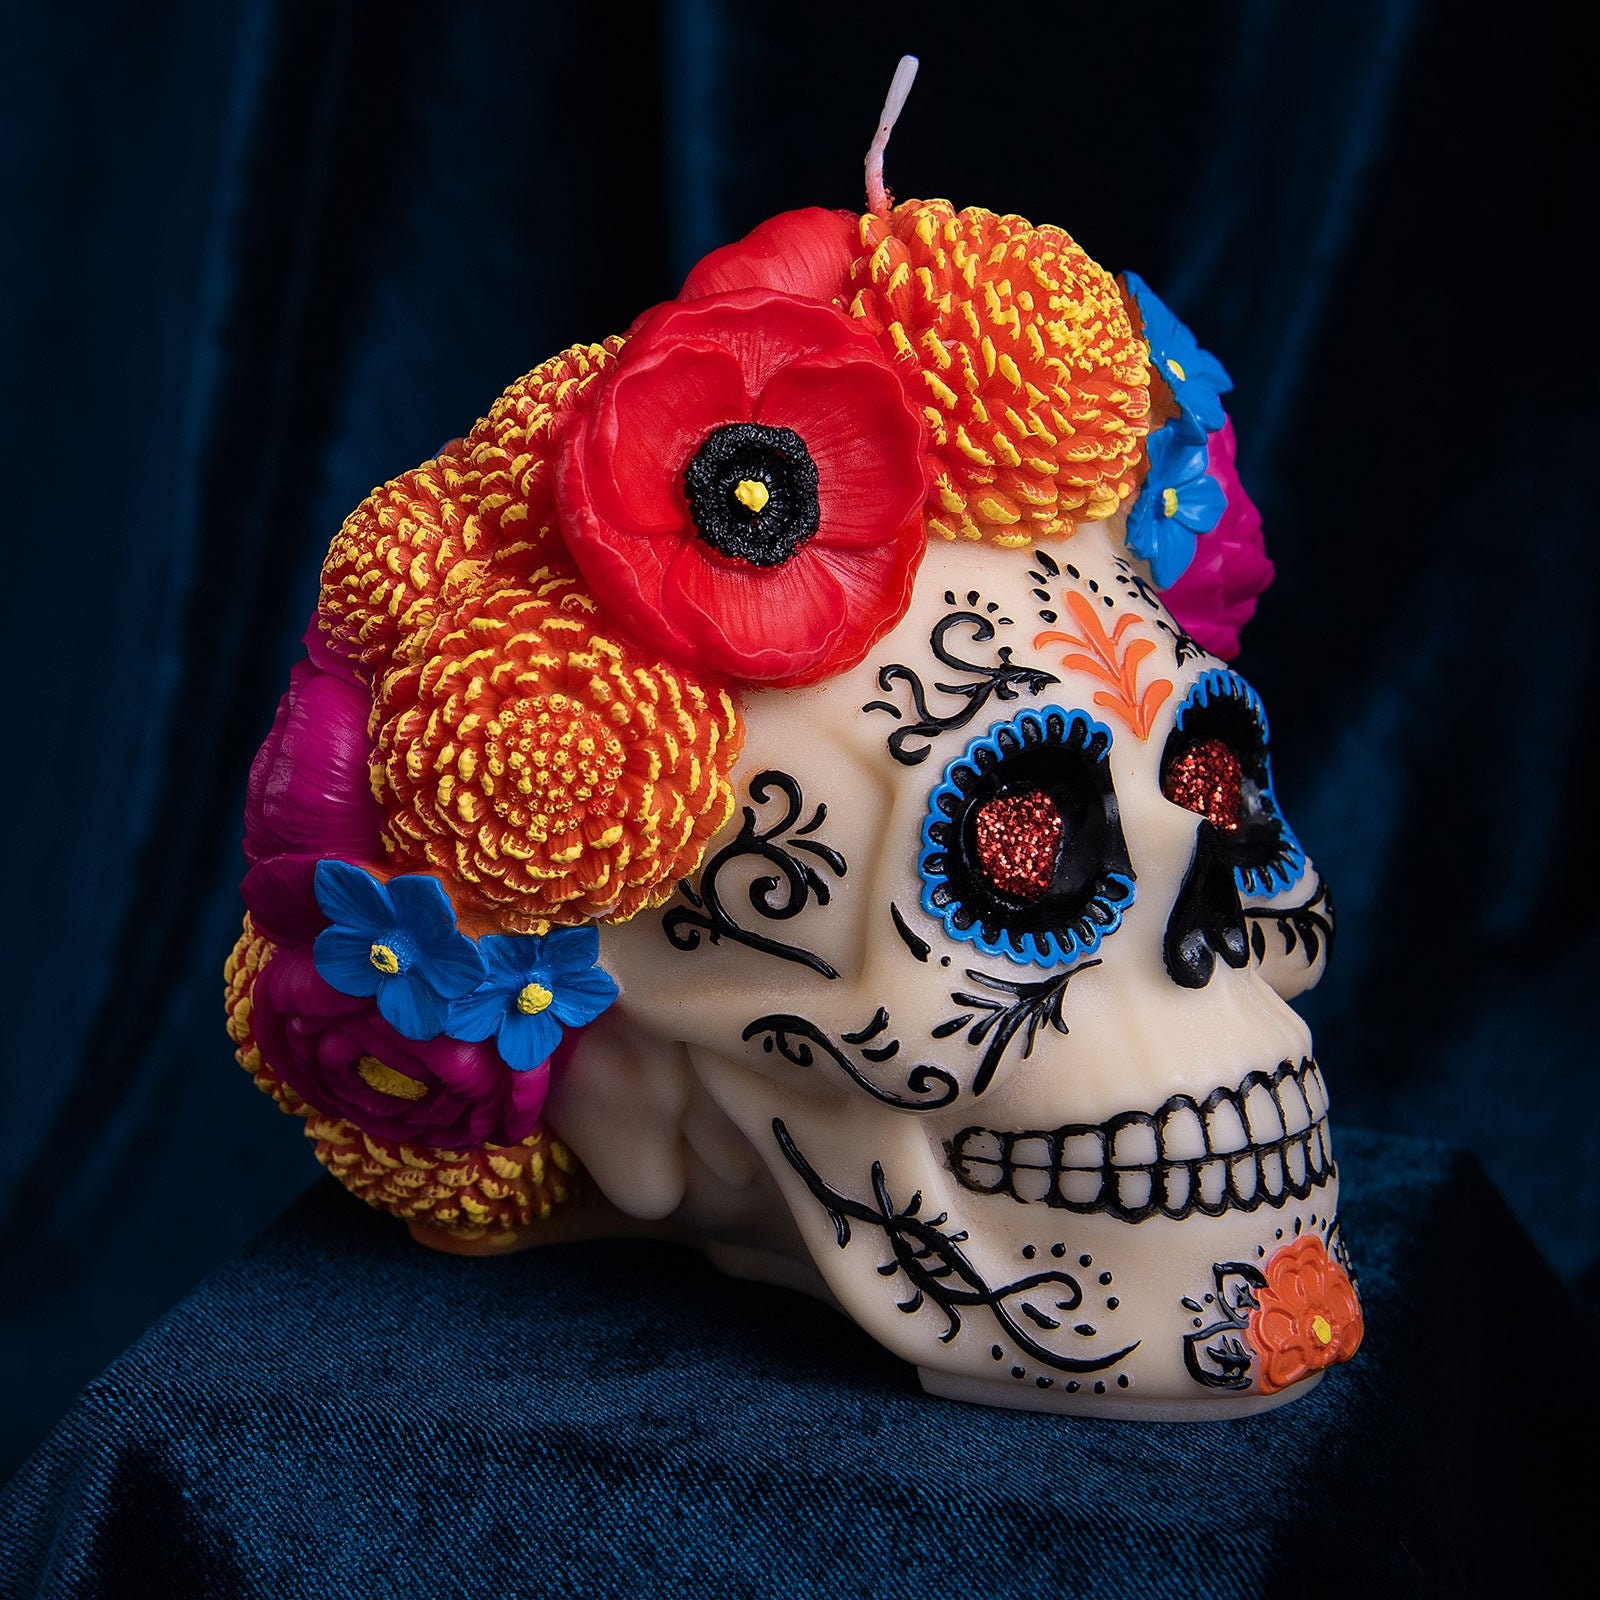 Décoration crâne coloré Dia de los muertos : Deguise-toi, achat de